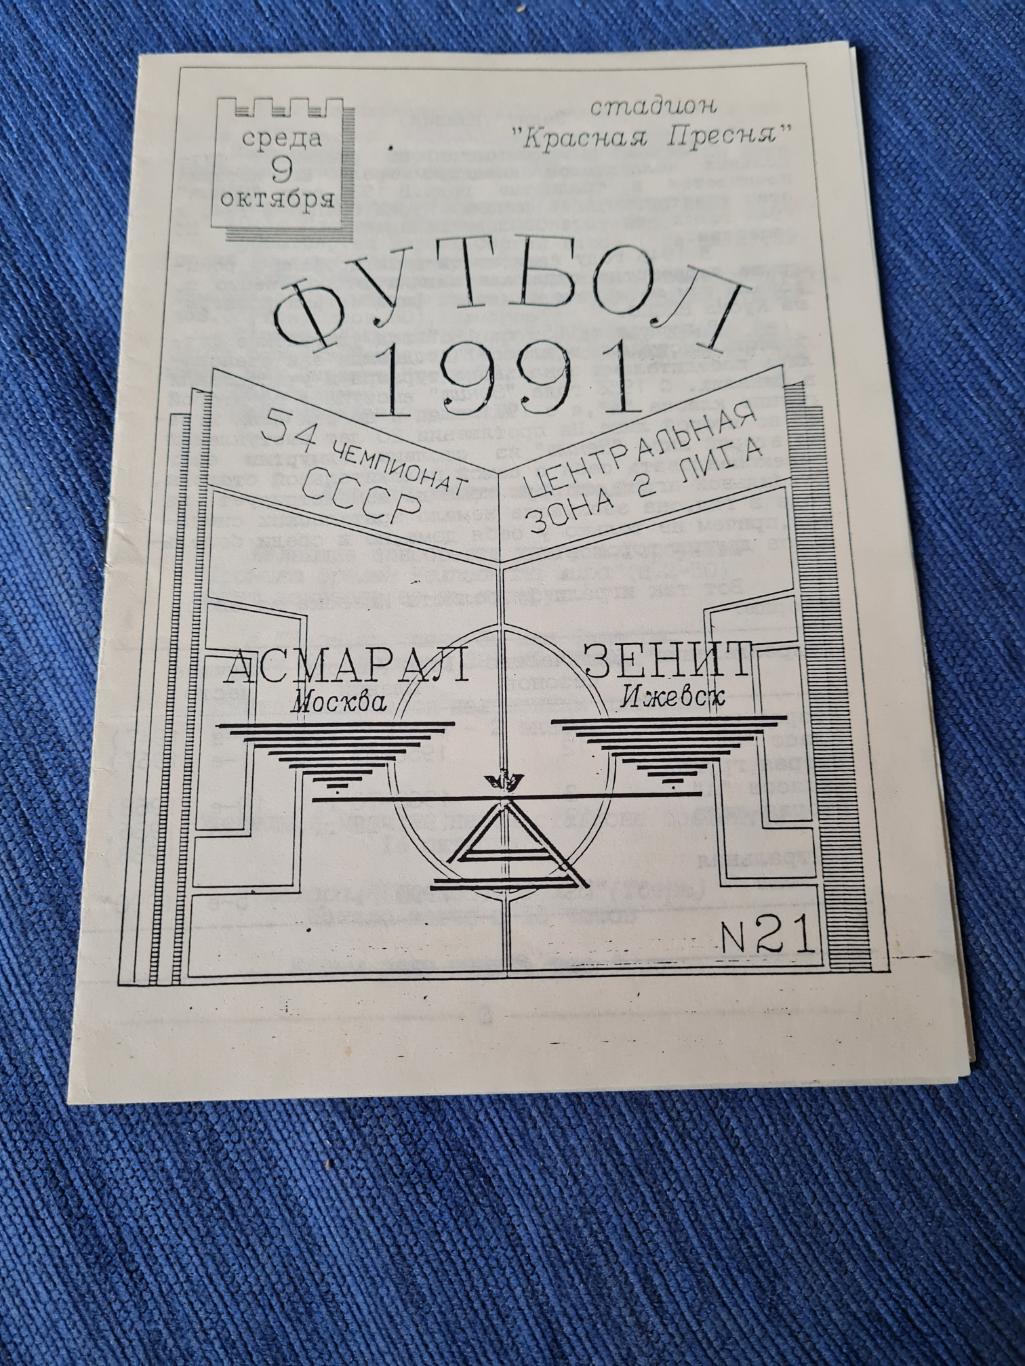 09.10.1991 . Асмарал - Зенит Ижевск.